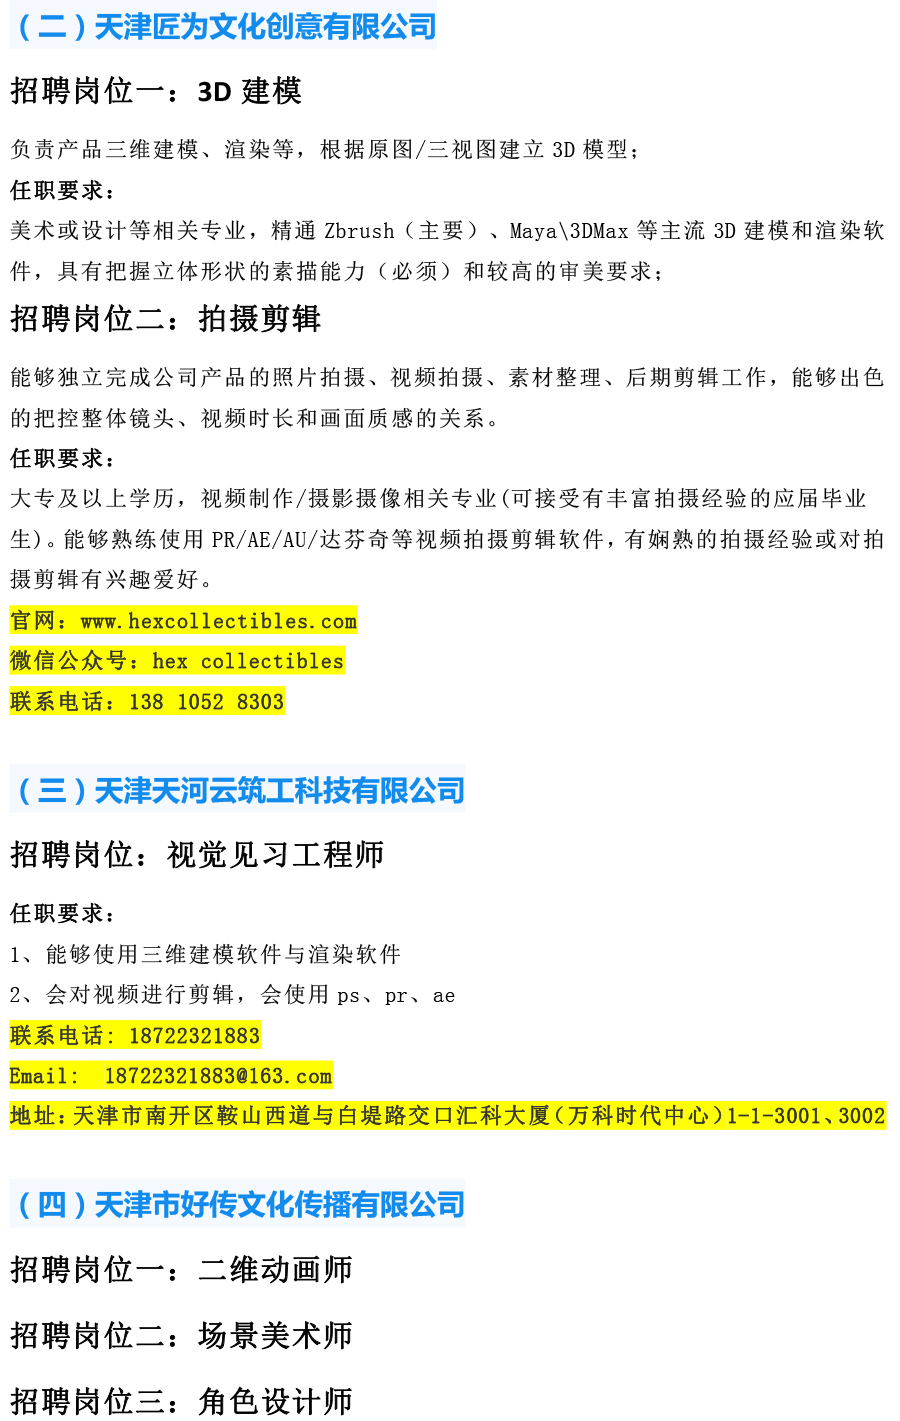 天津工艺美术职业天下足球网2021年12月招聘信息-2.jpg